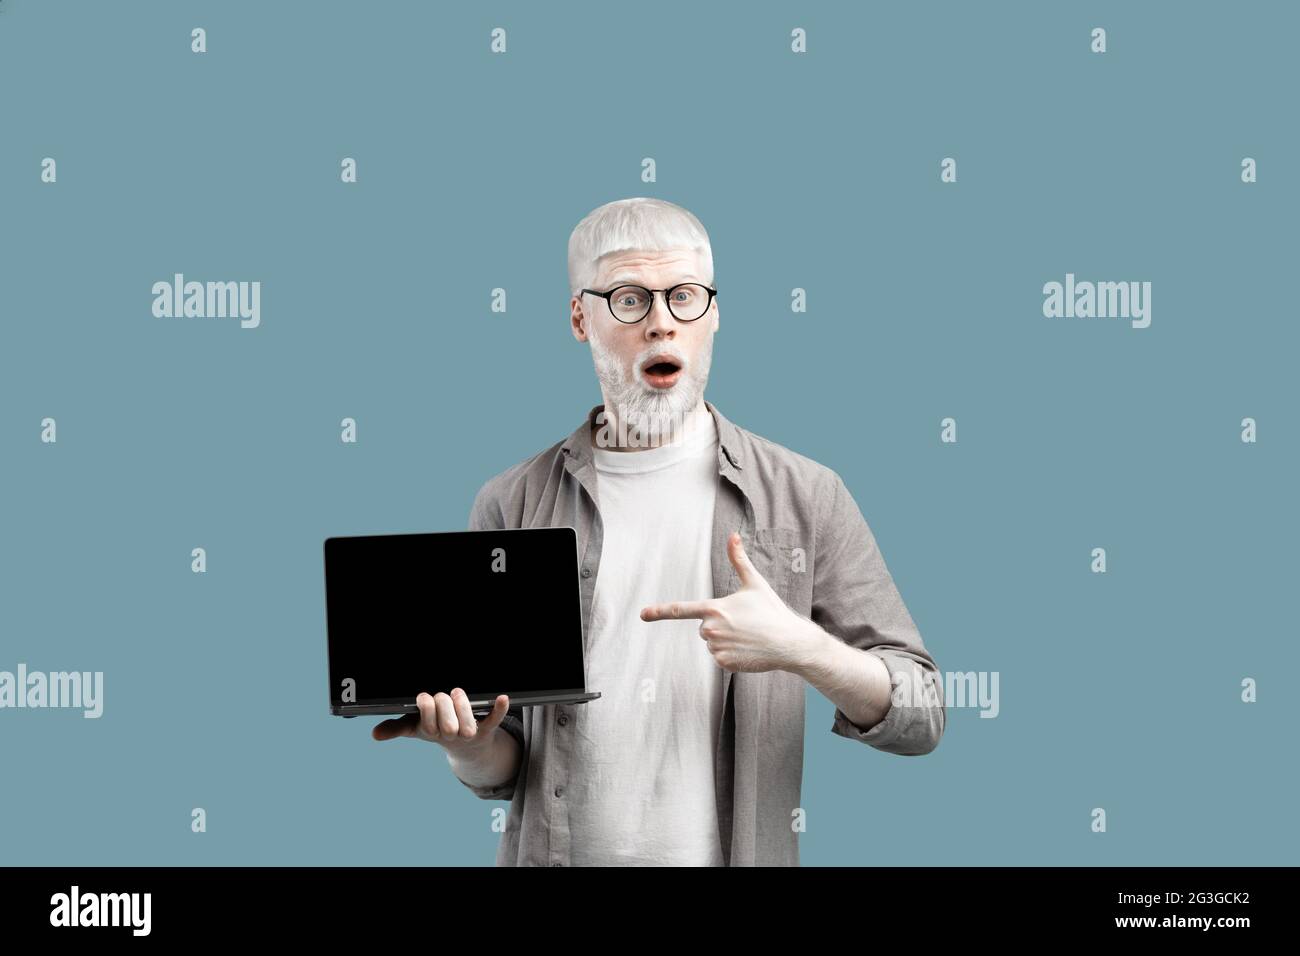 Grande pubblicità di Web site. Un uomo albino sorpreso che mostra lo schermo vuoto del notebook, puntandolo su uno sfondo turchese Foto Stock